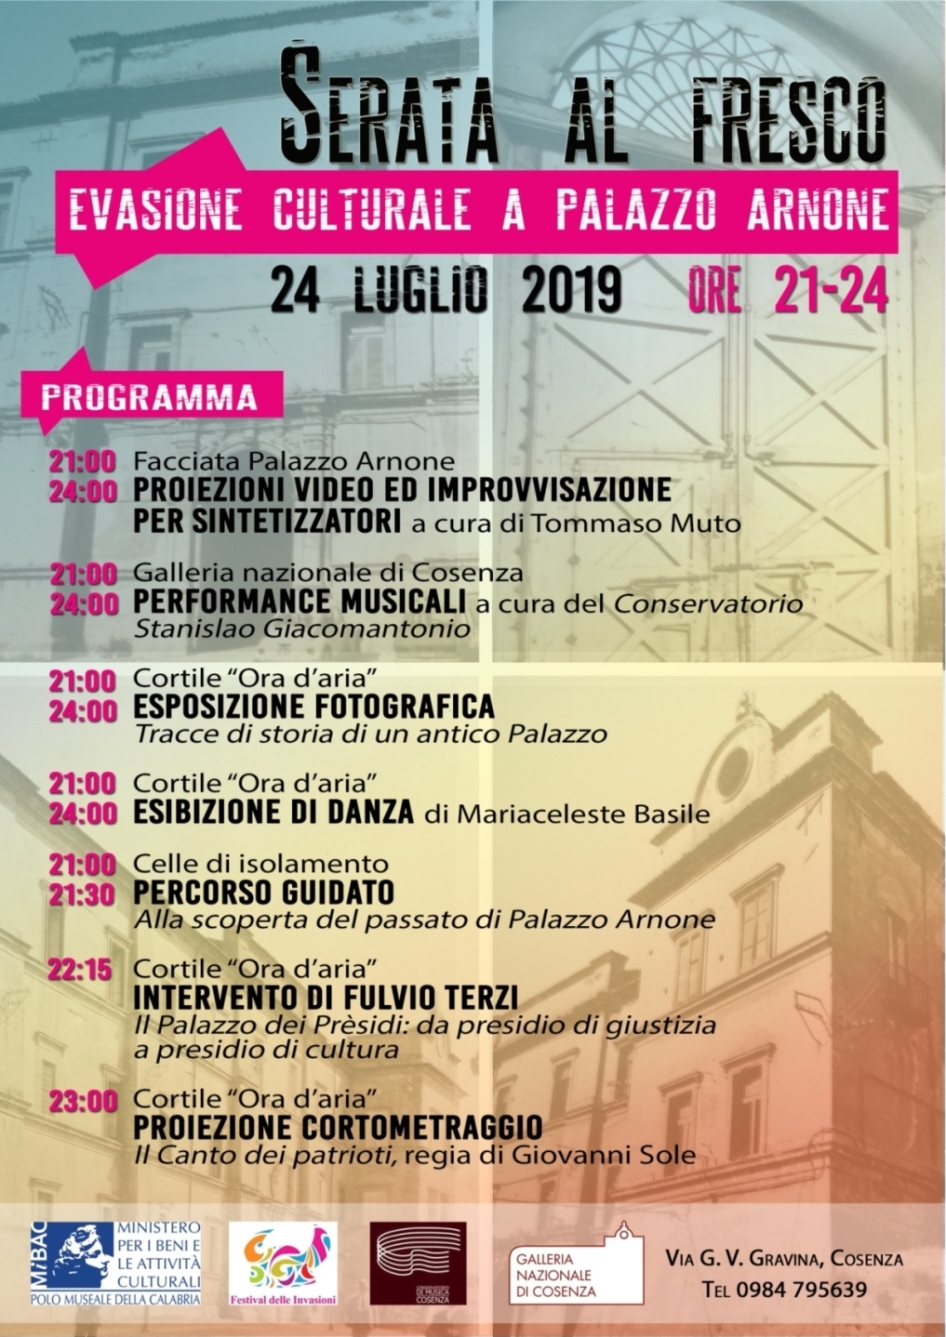 Serata al fresco Evasione culturale a Palazzo Arnone Cosenza – Palazzo Arnone 24 luglio 2019 – Ore 21.00/24.00